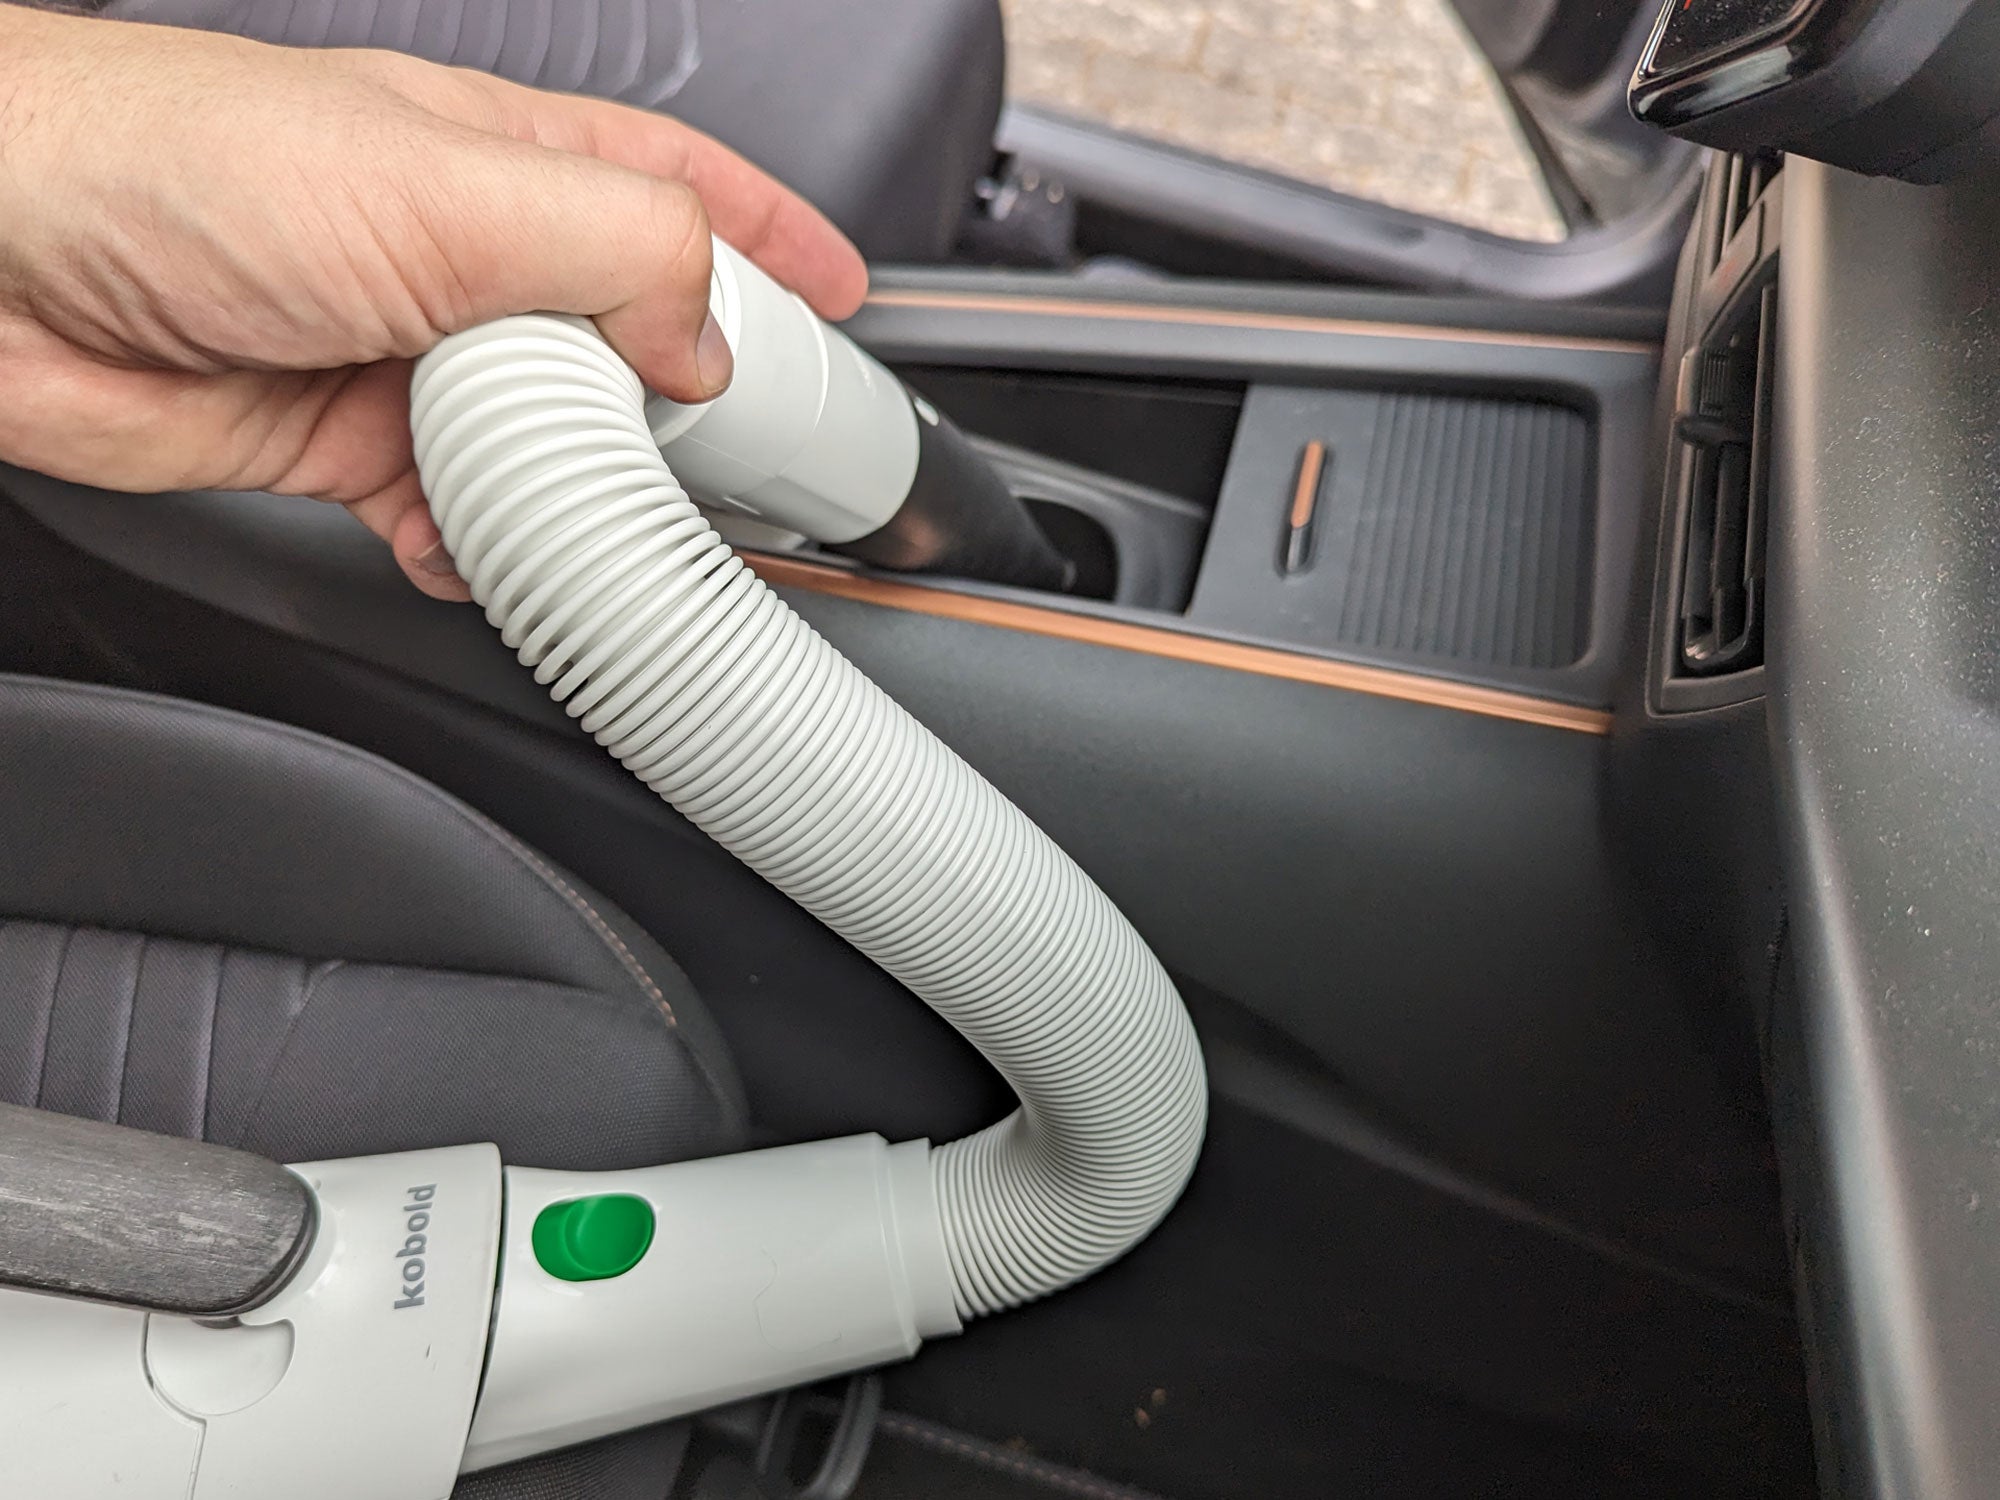 Autopolster & Autositze reinigen: Autoinnenreinigung mit Kobold - Vorwerk  Kobold